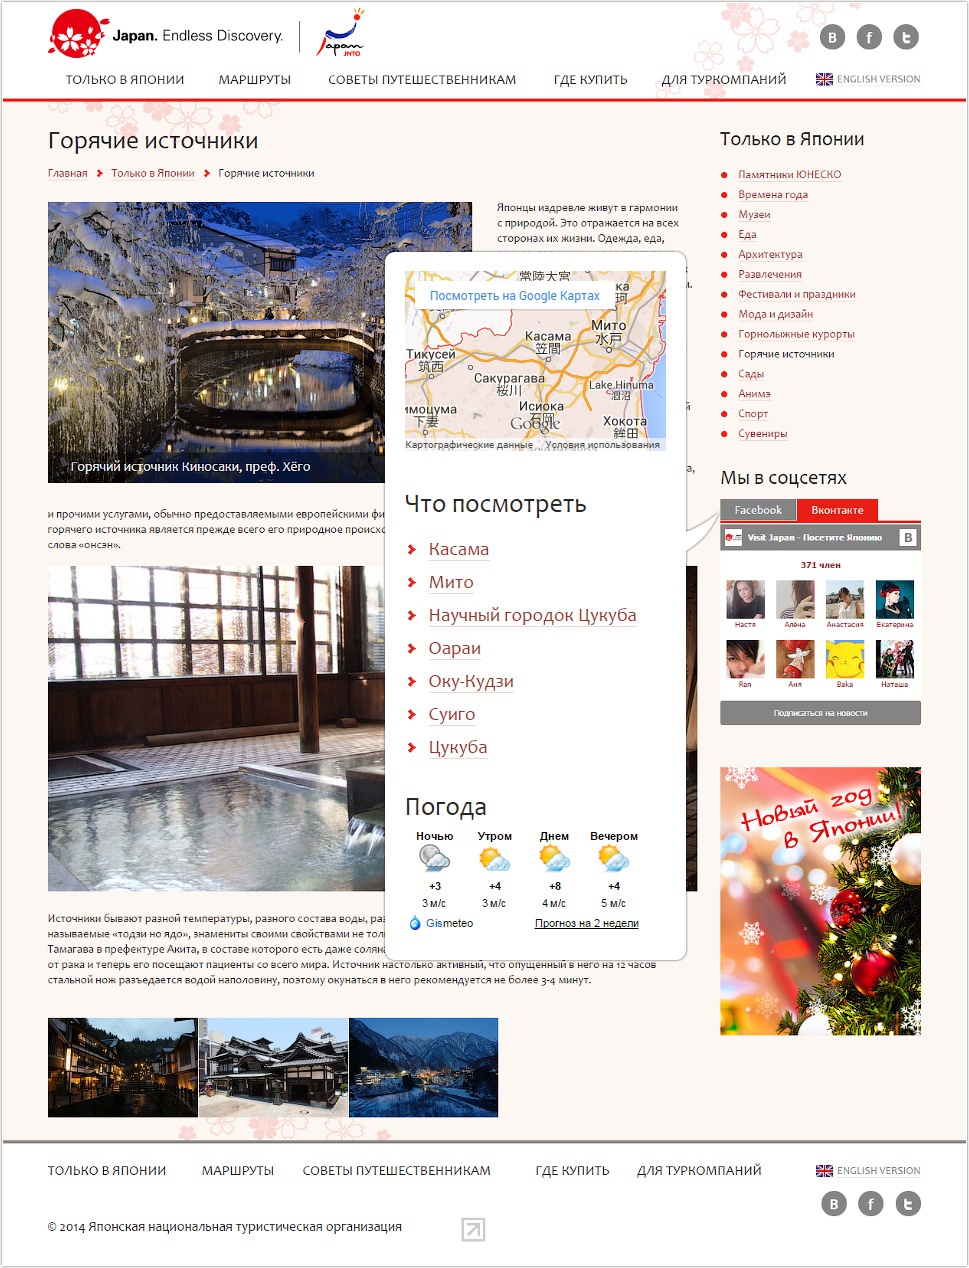 Структура сайта представительства по туризму Японии